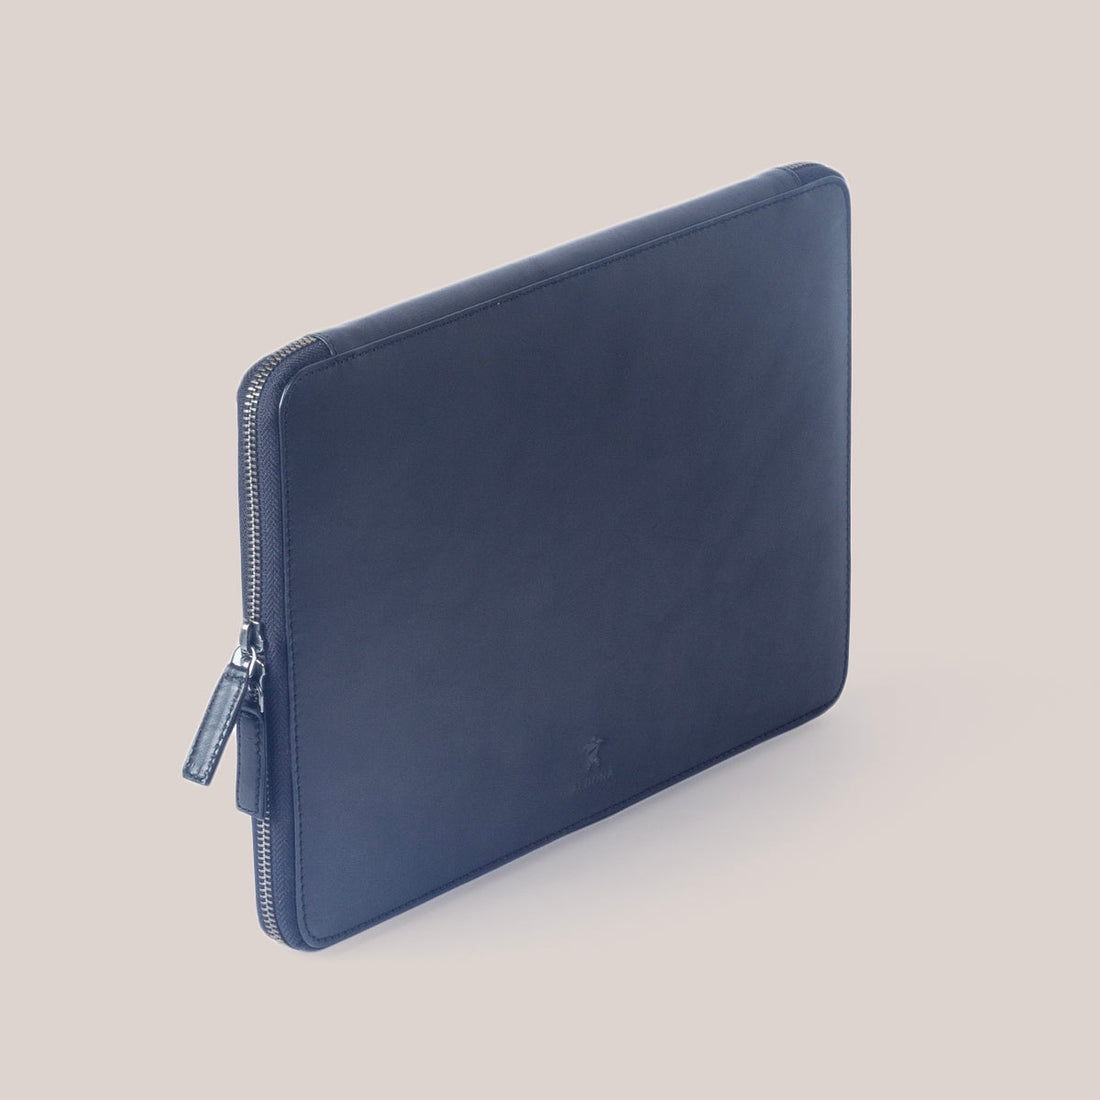 MacBook Pro 14 Zippered Laptop Case - Felt and Tan Crunch